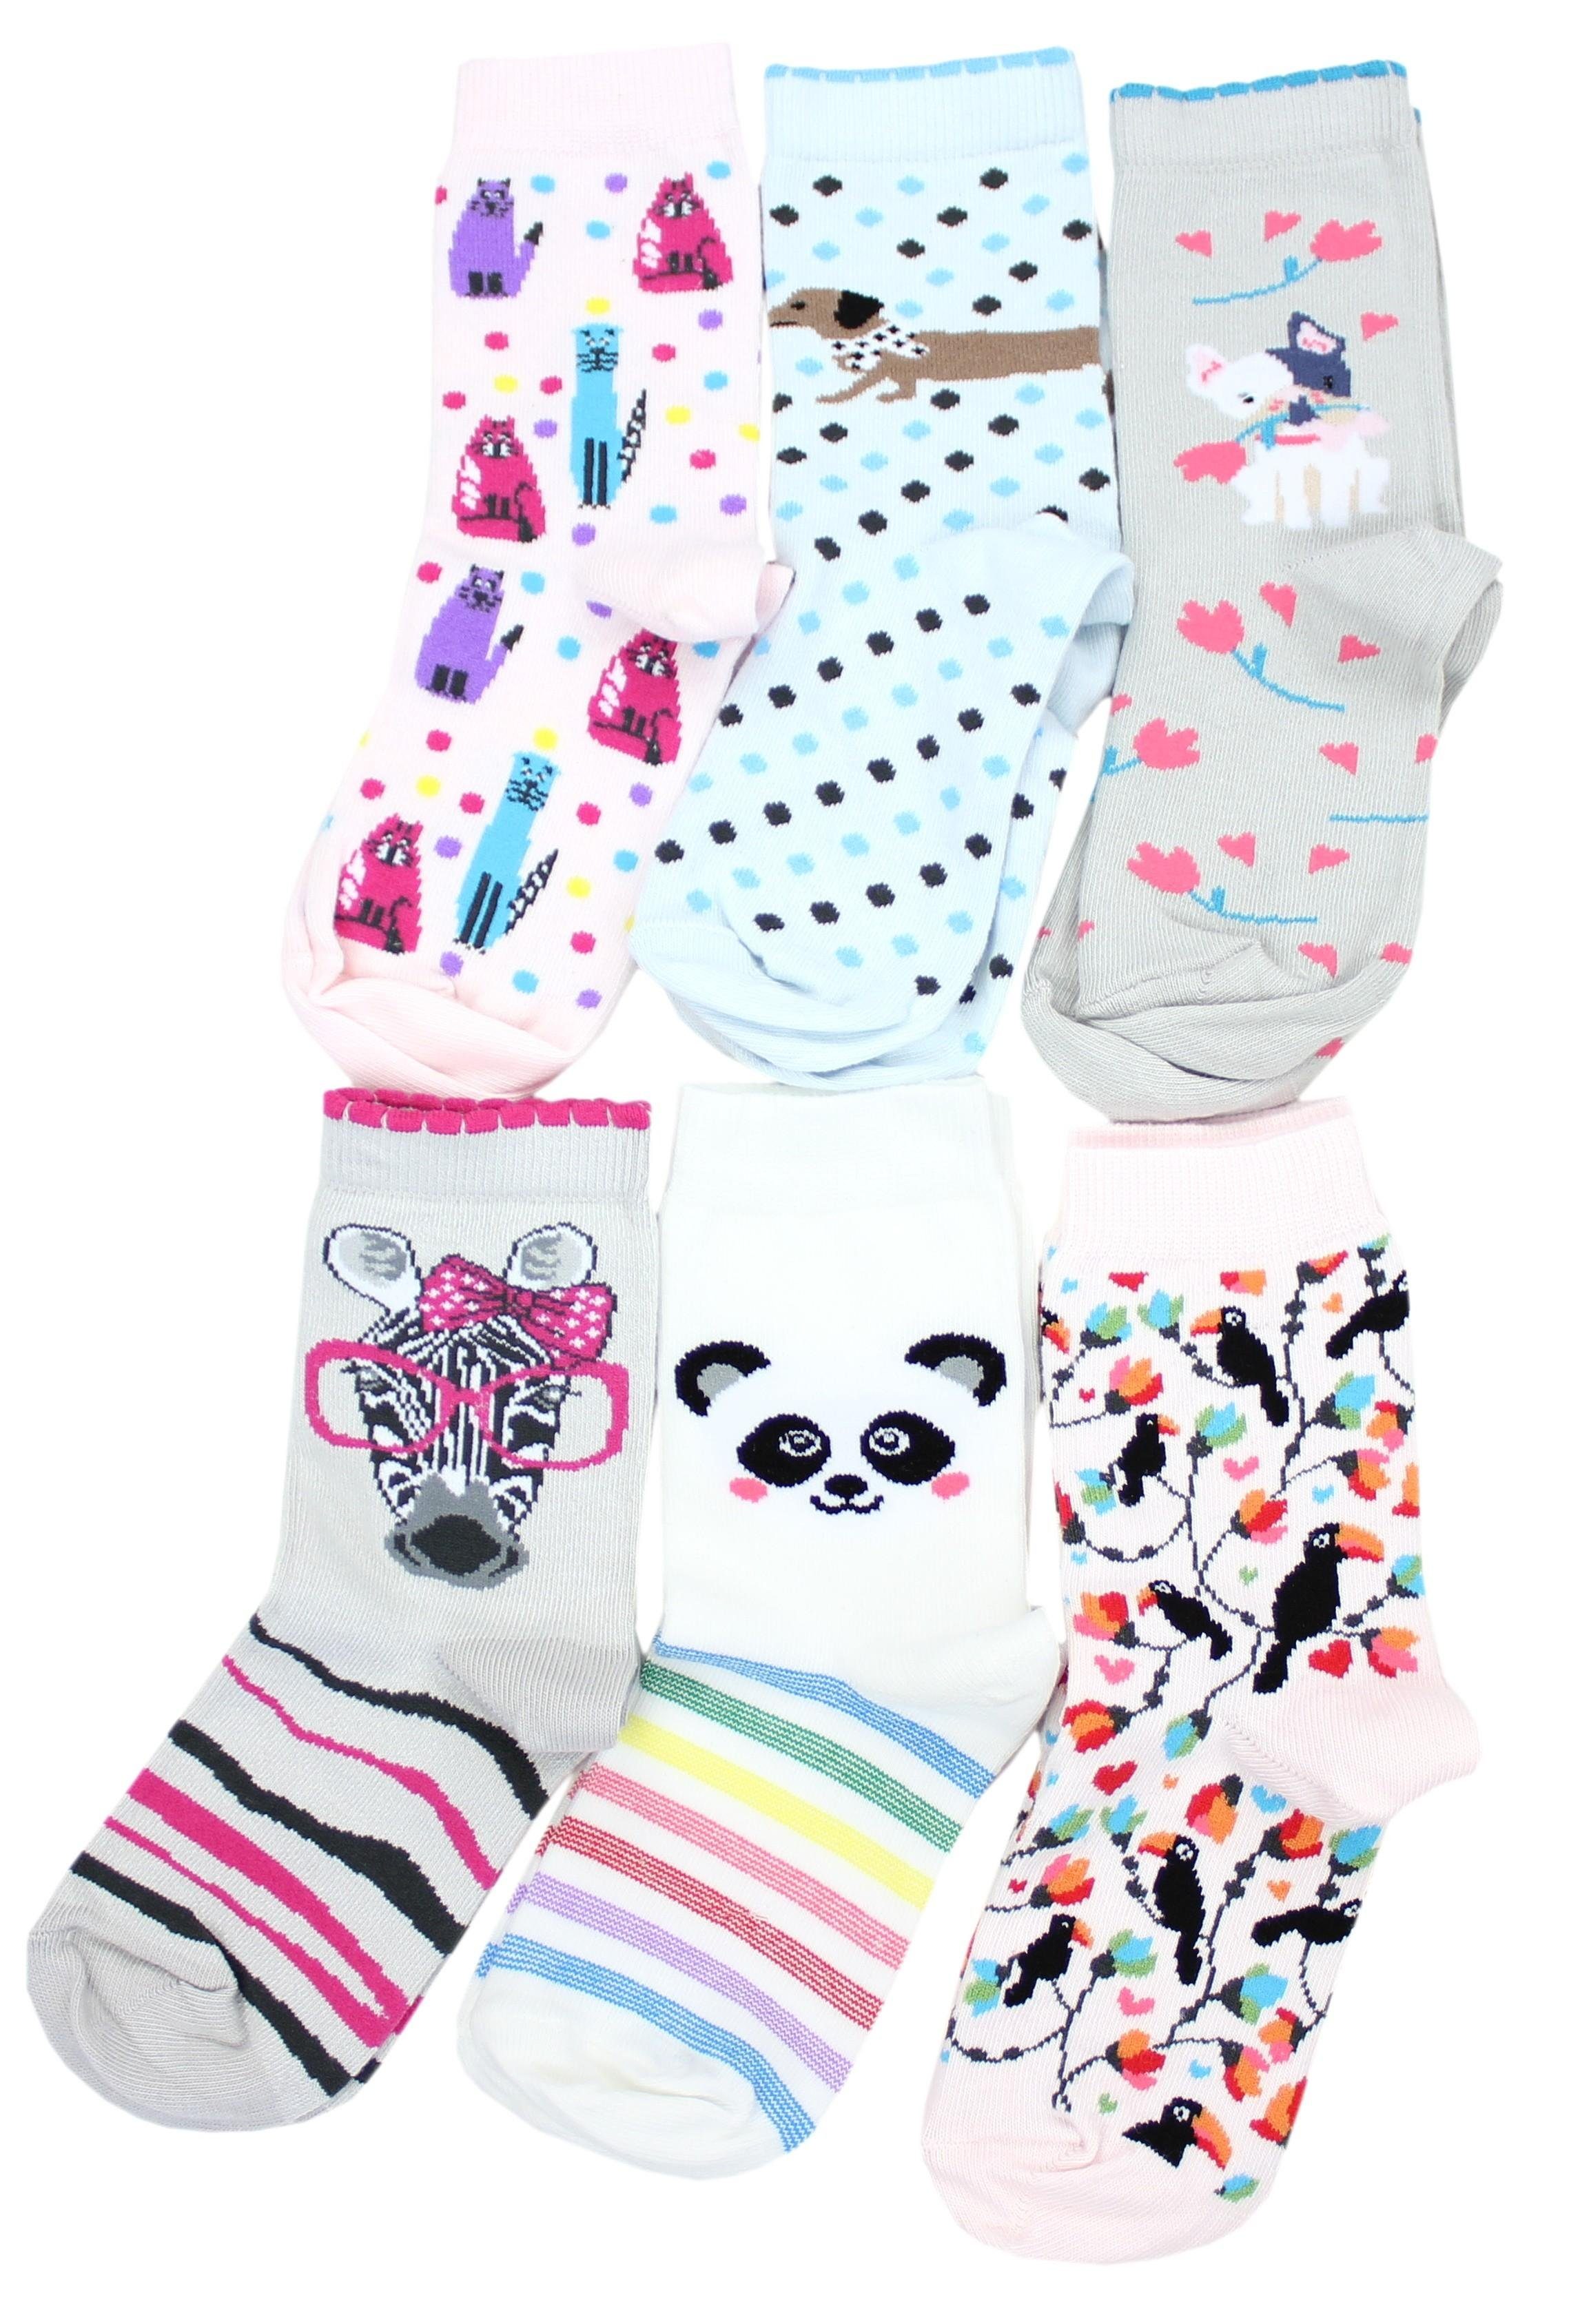 TupTam Freizeitsocken TupTam Kinder Socken Bunt Gemustert 6er Pack für Mädchen und Jungen Mädchen 4